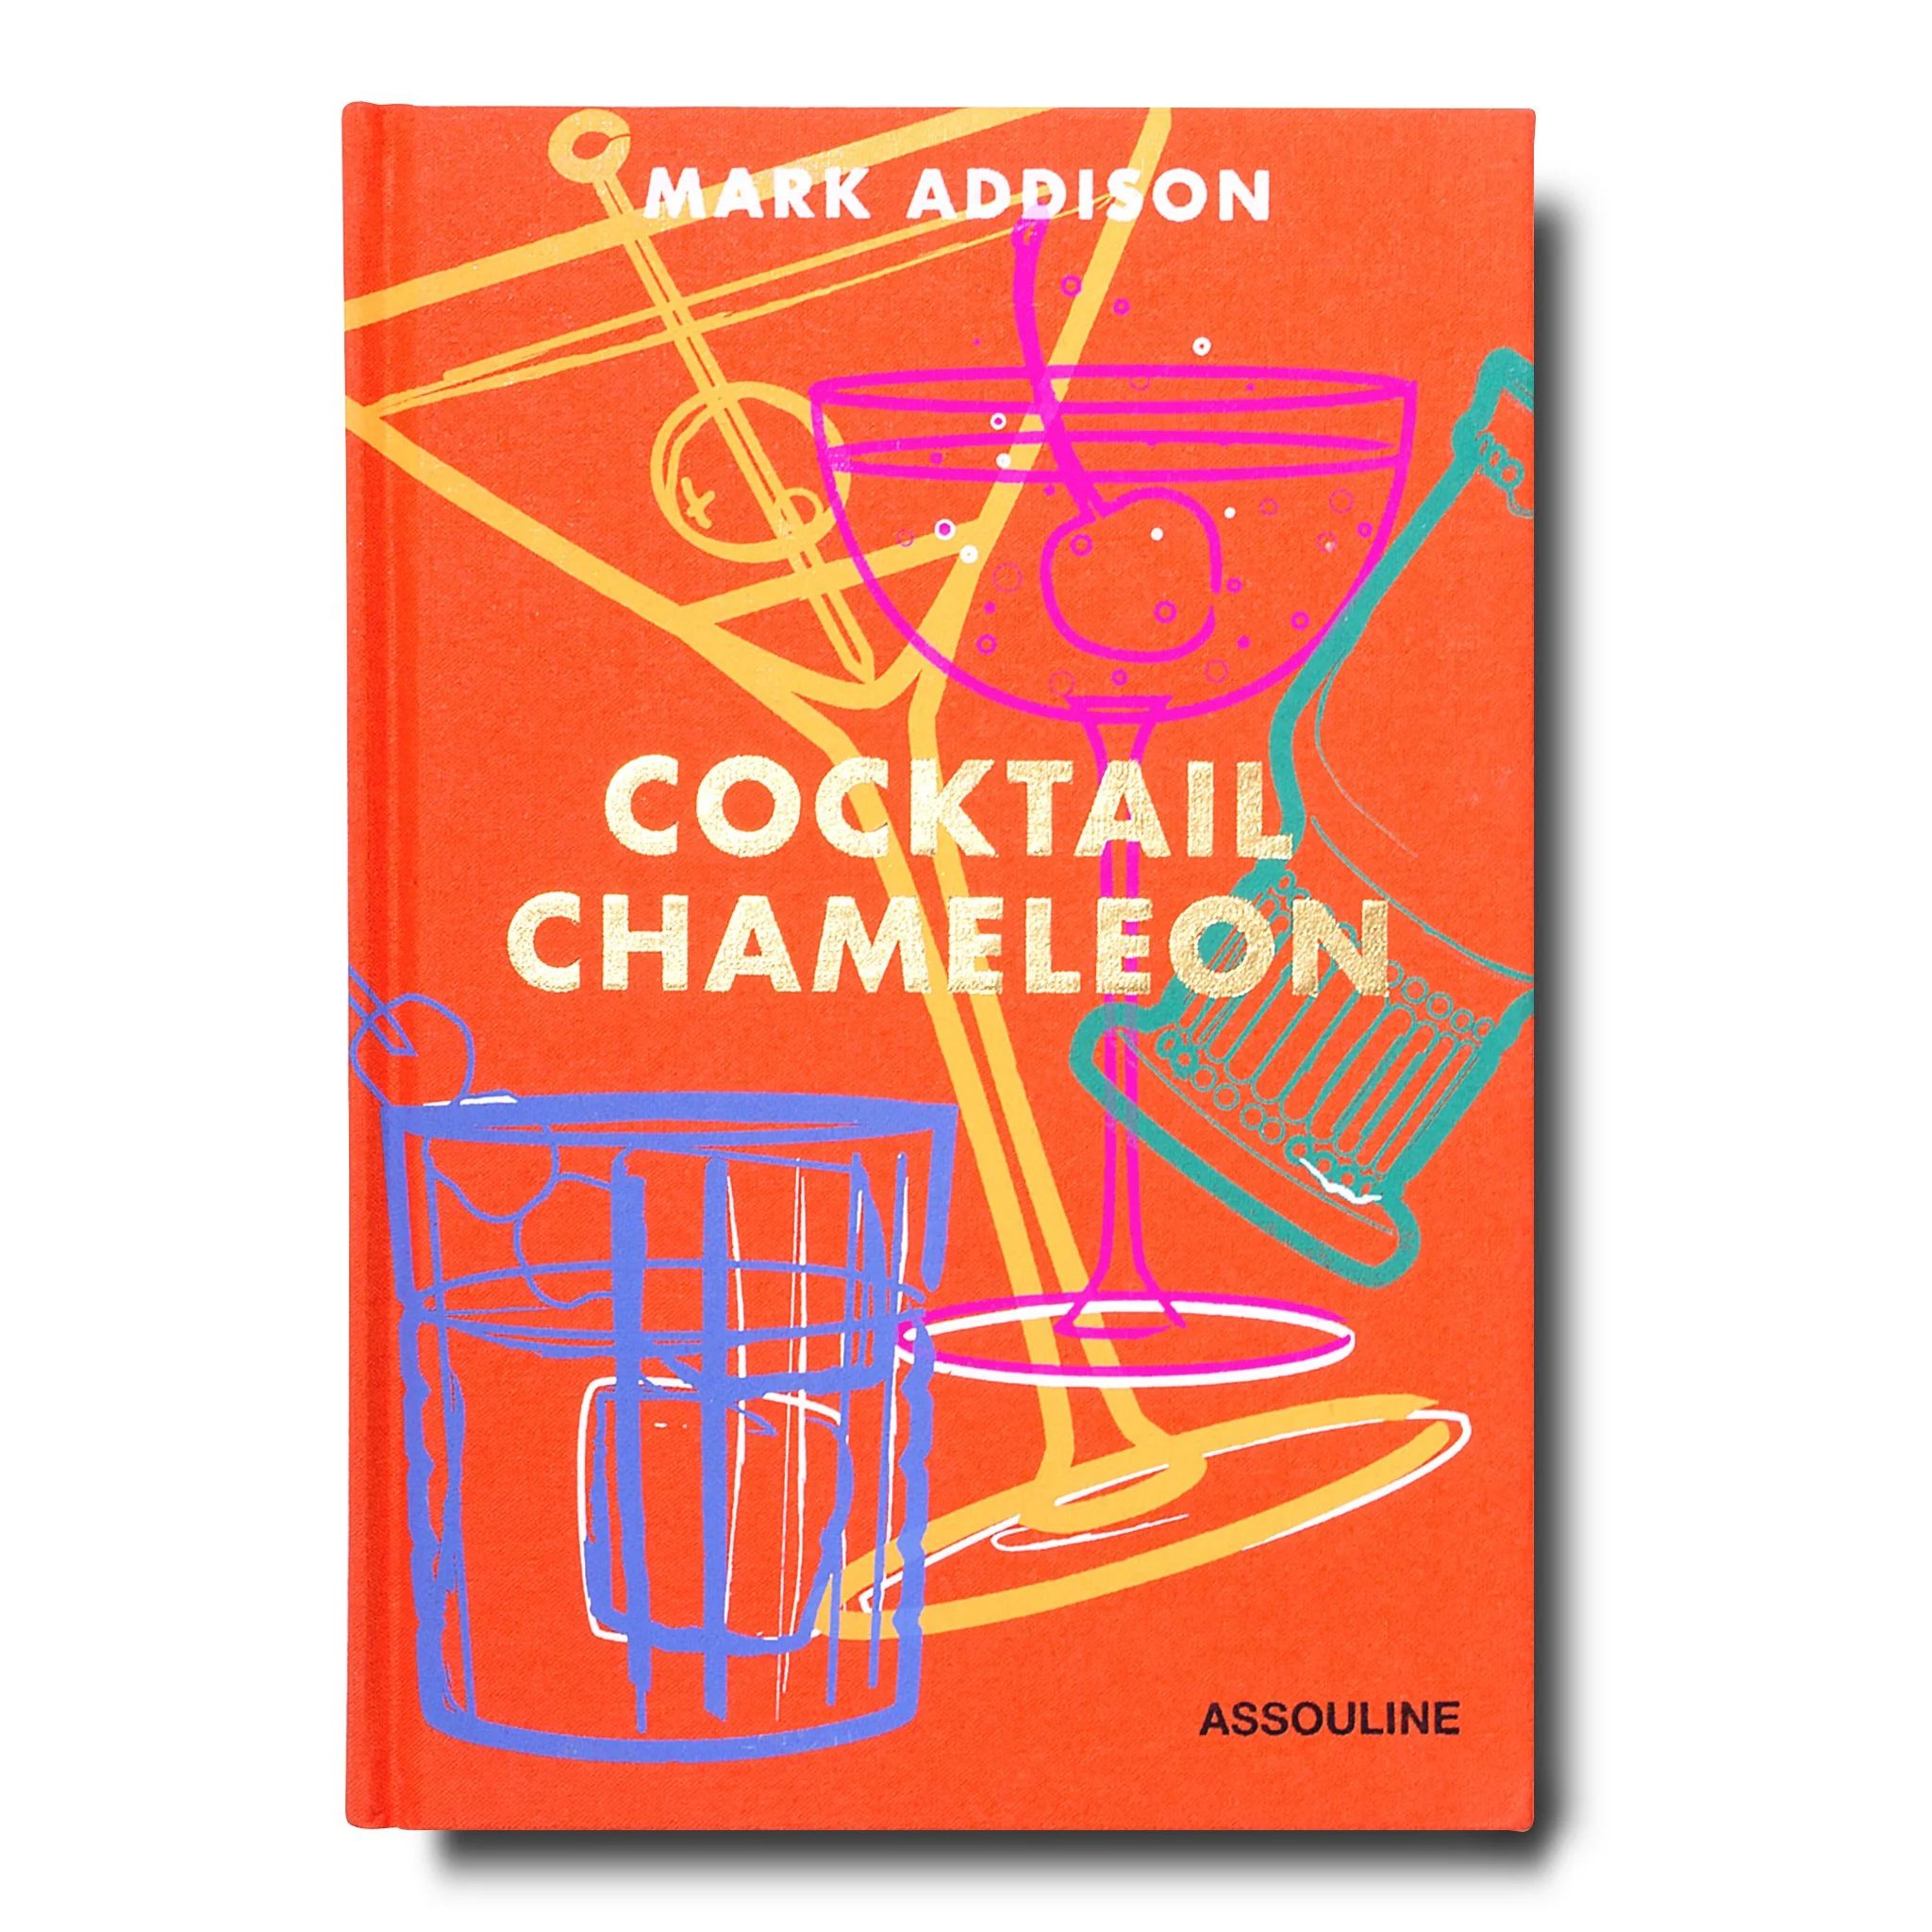 Cocktail Chameleon by Mark Addison | ASSOULINE | Assouline